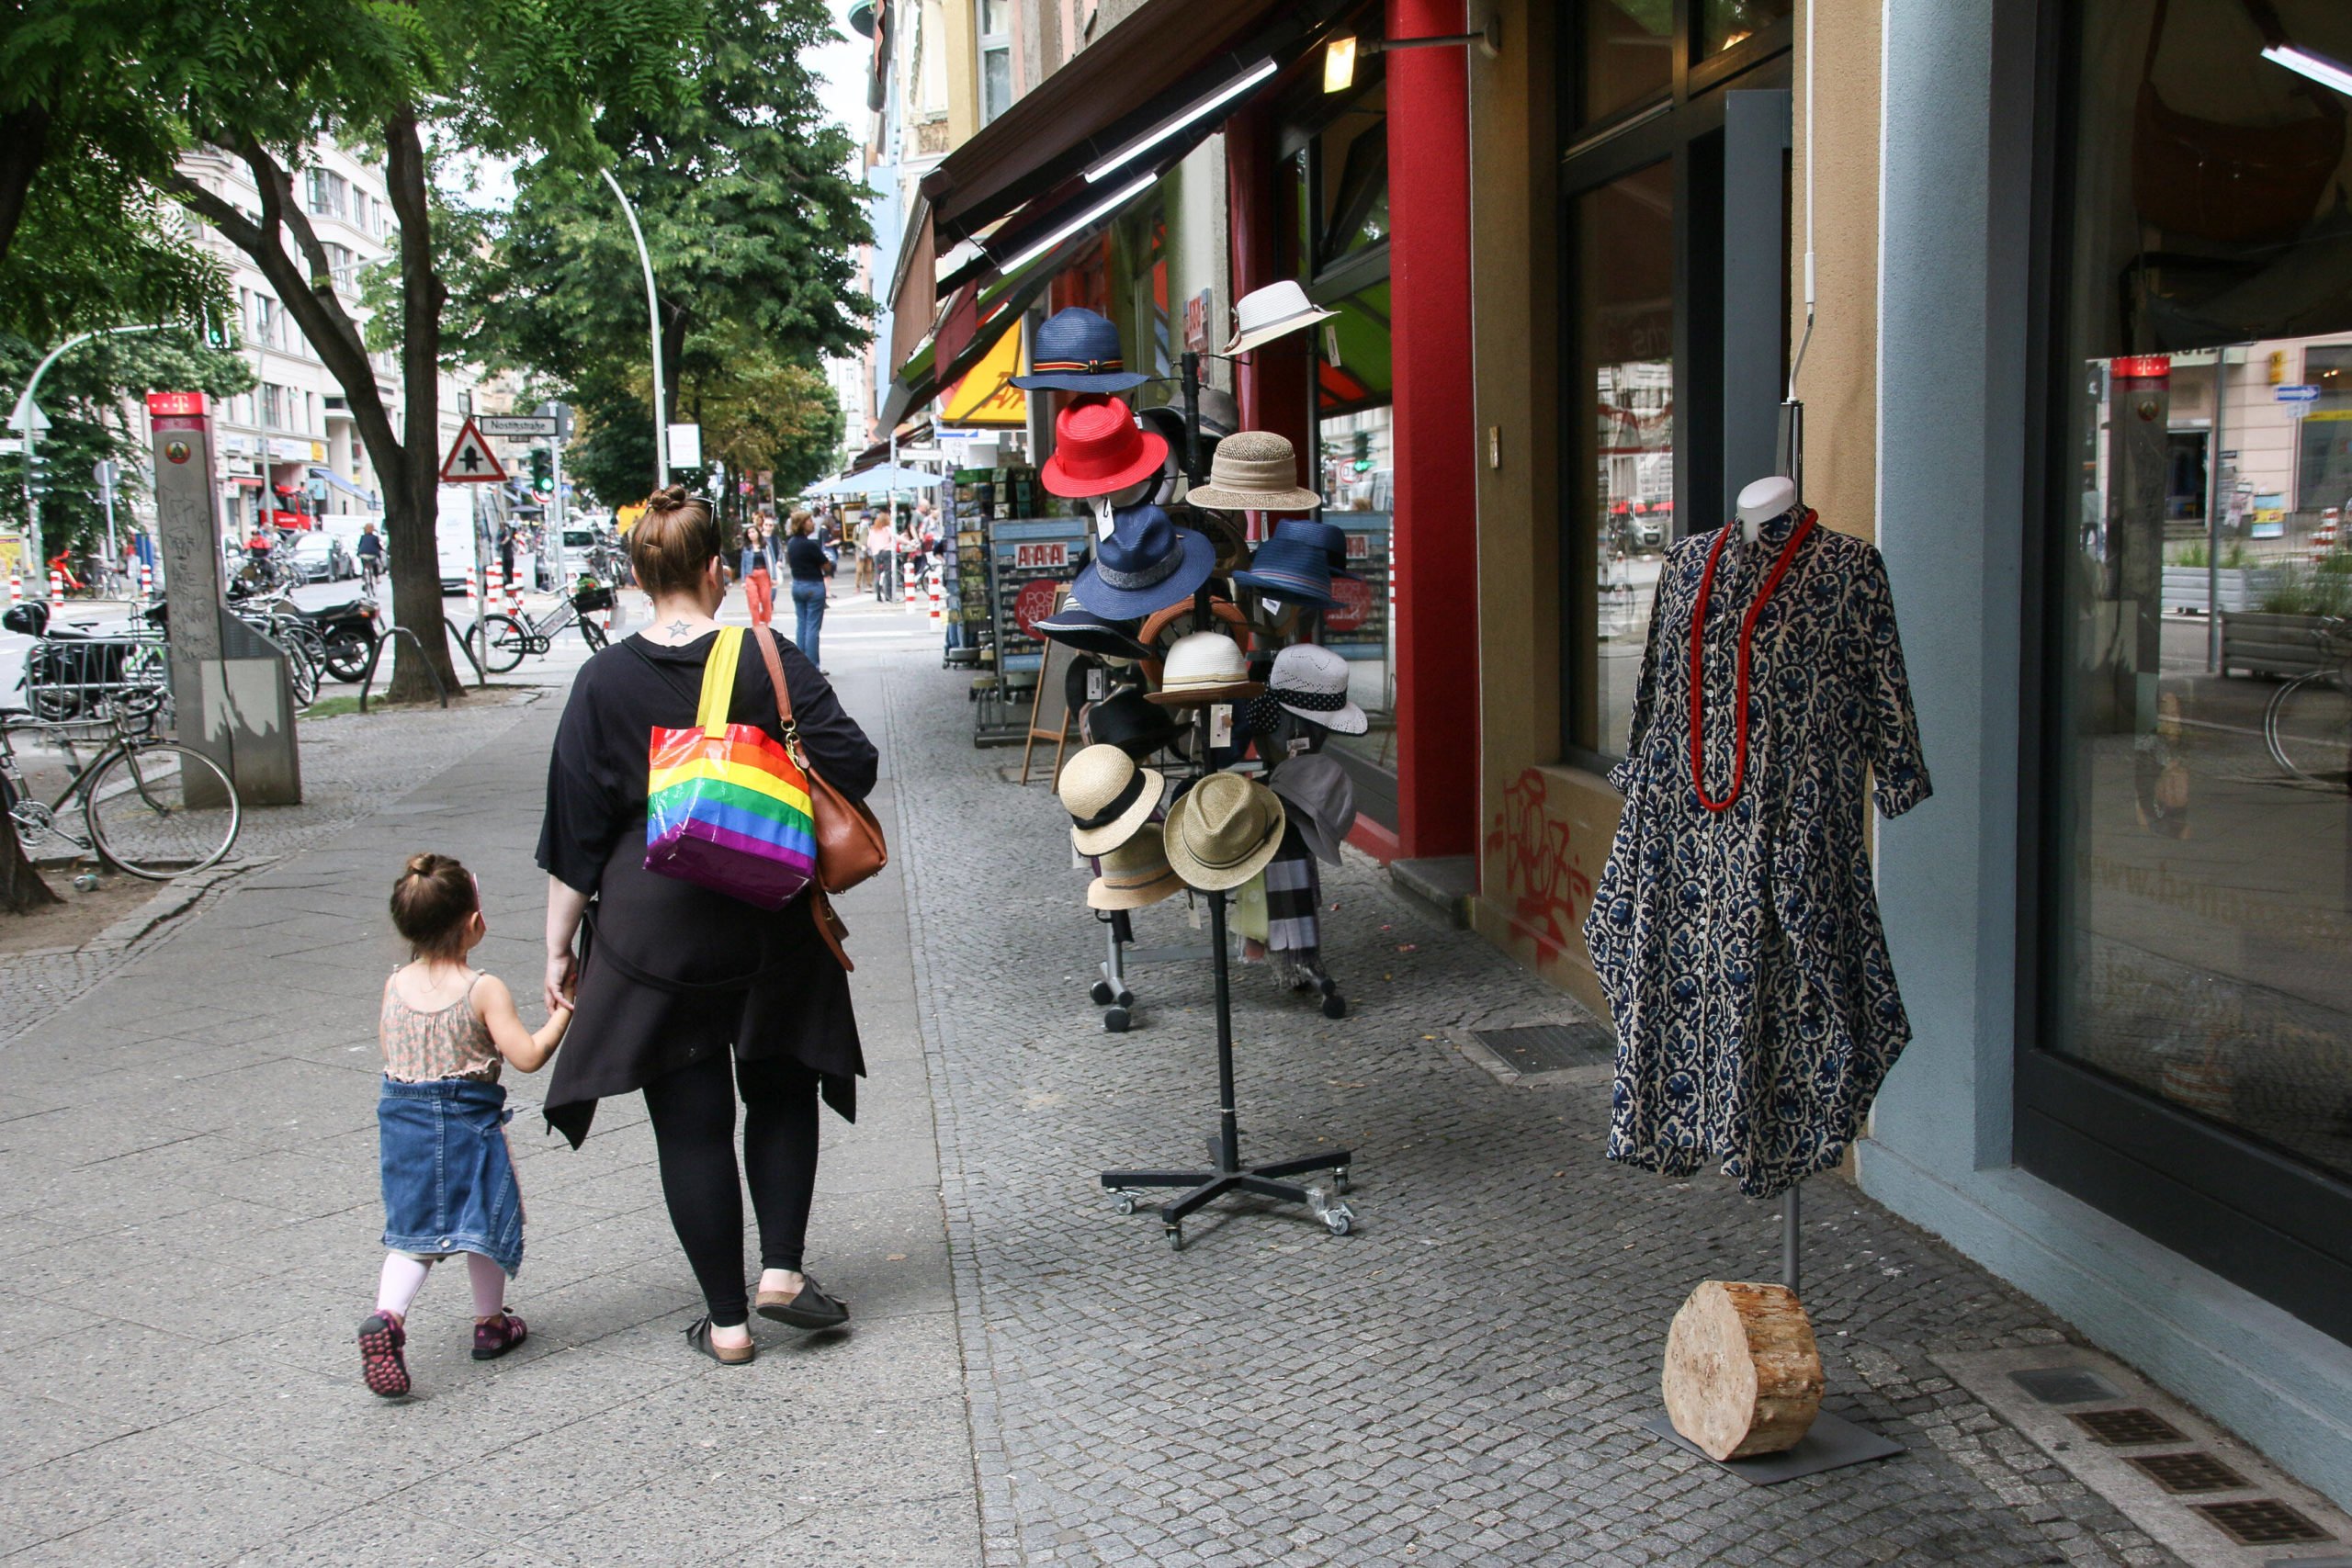 shoppen in Kreuzberg Mit gerade einmal 1,3 Kilometern Länge ist die Bergmannstraße keine lange Shoppingmeile. Aber das Gewerbe auf der historischen Straße ist sehr konzentriert, Auswahl und Vielfalt sind groß.